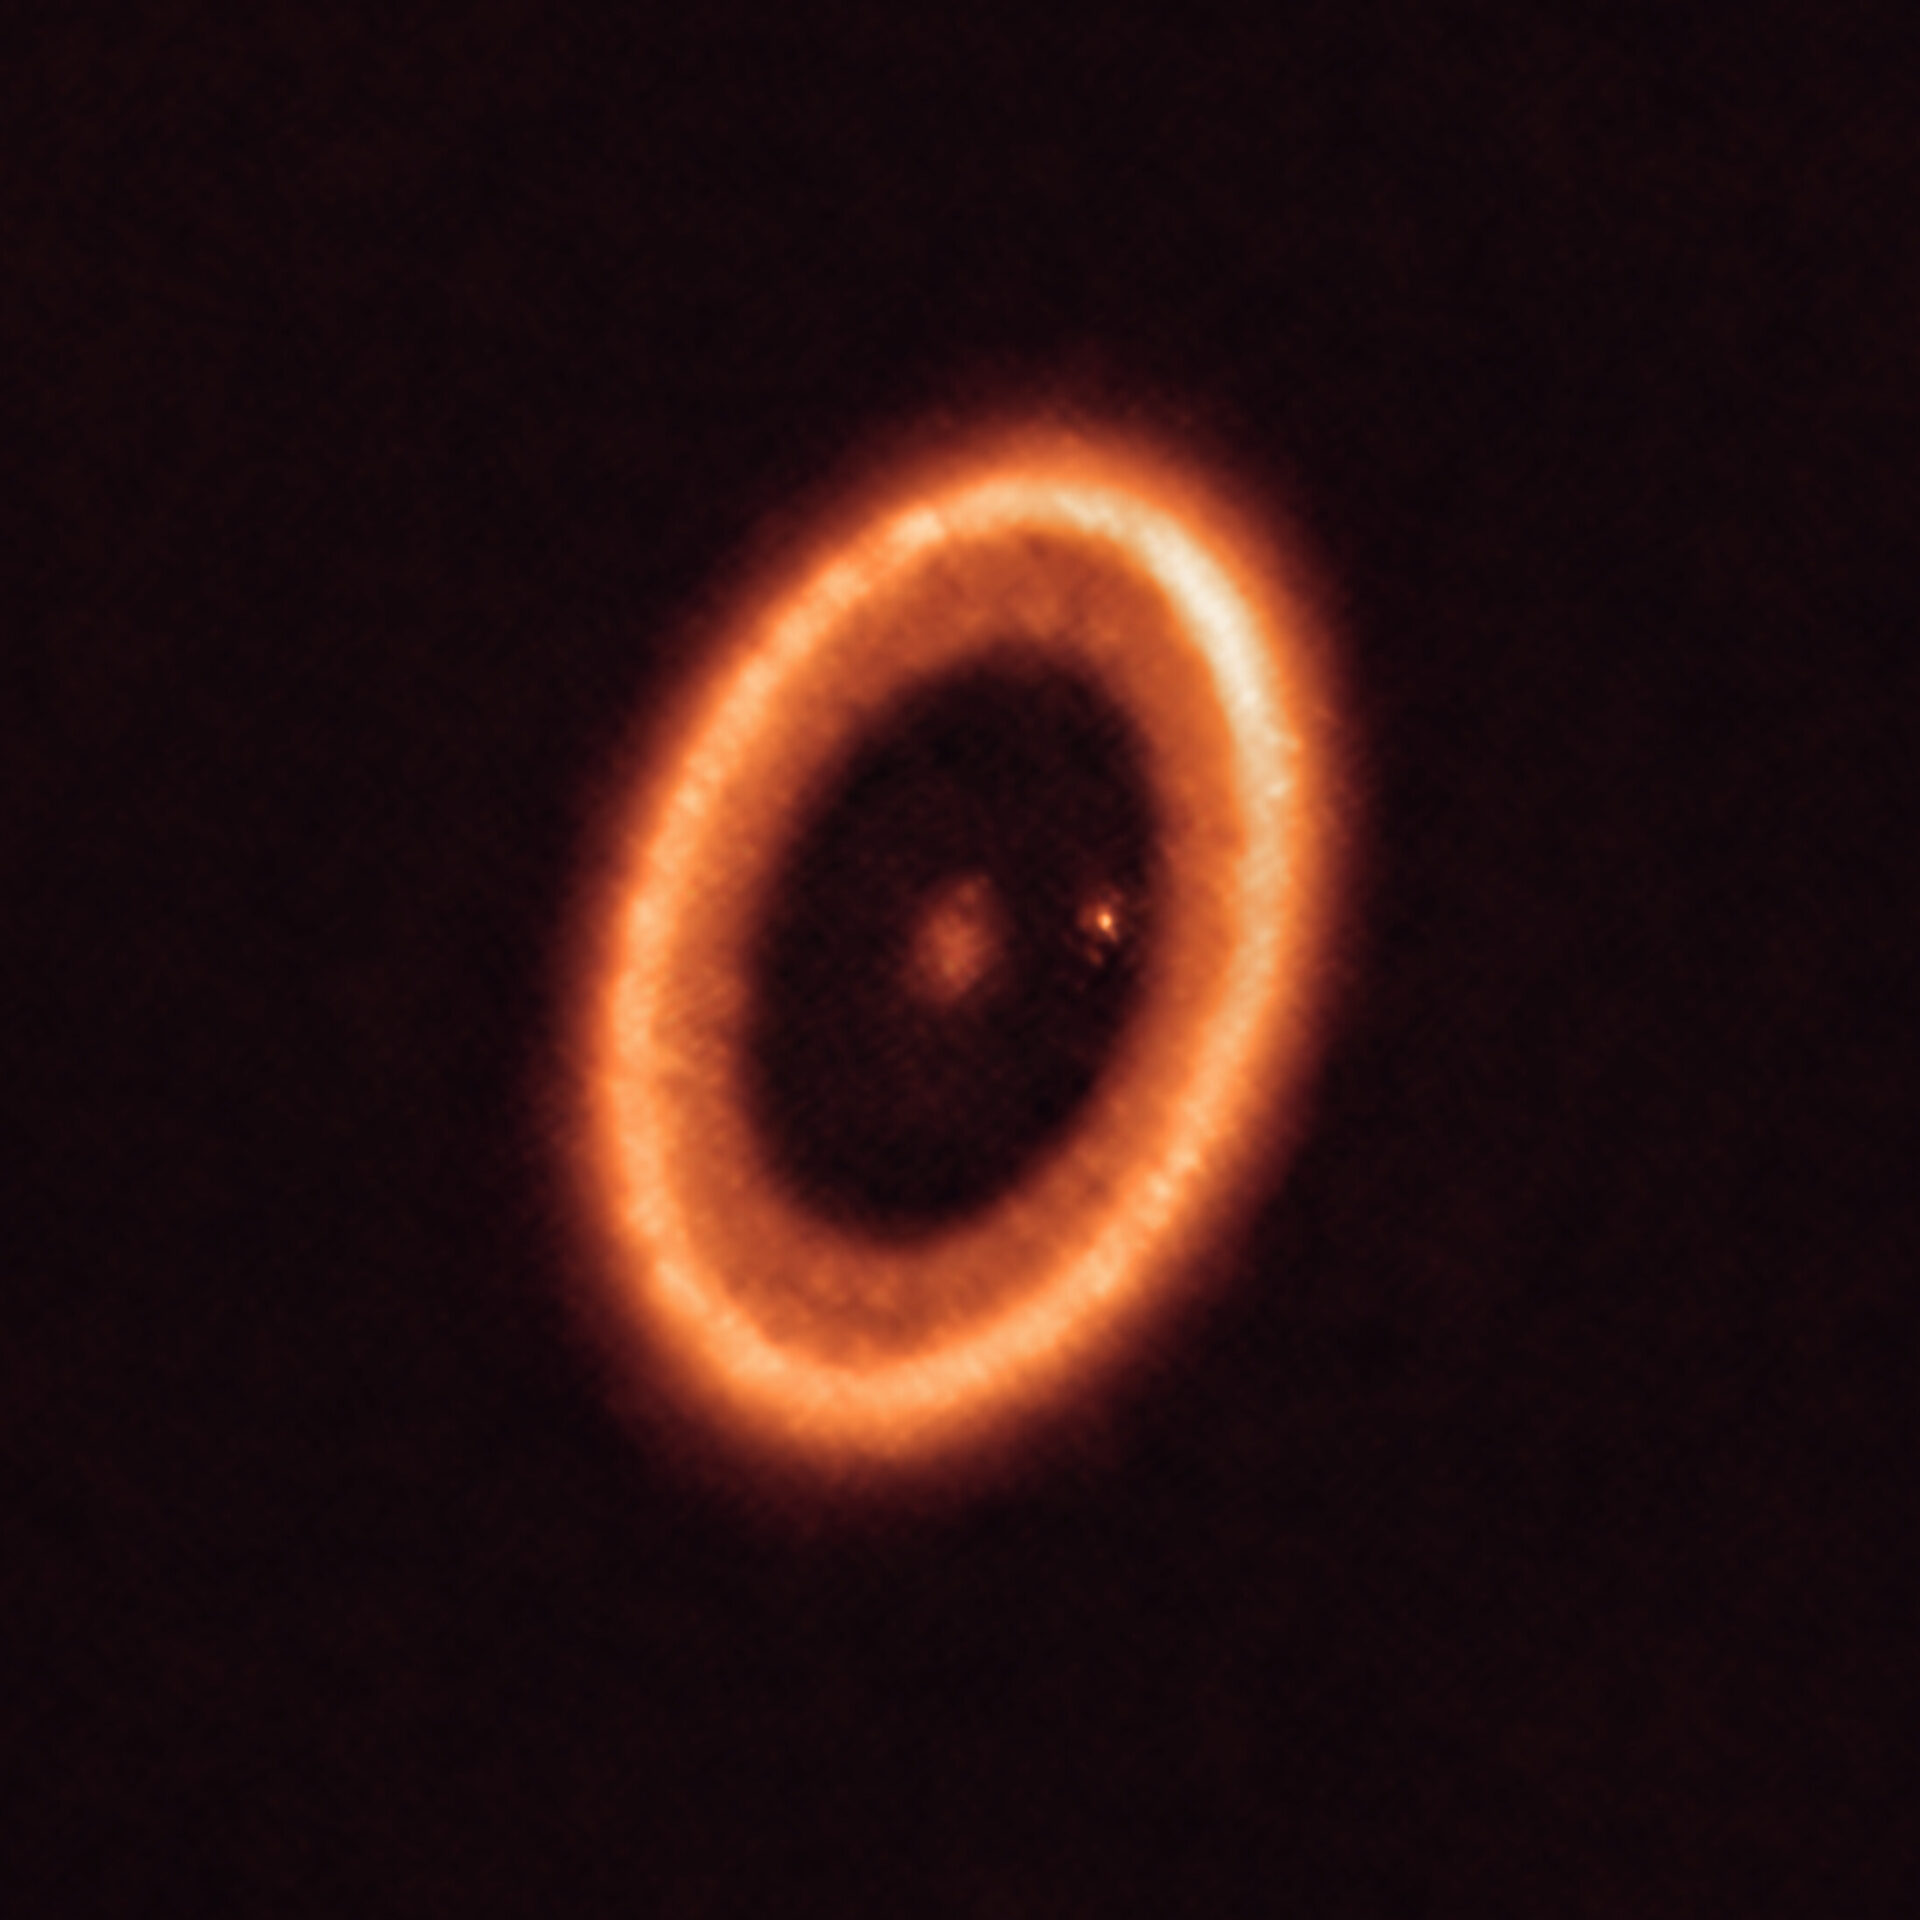 <p>Esta imagen, tomada con el Atacama Large Millimeter/submillimeter Array (ALMA), del que ESO es socio, muestra el sistema PDS 70, ubicado a casi 400 años luz de distancia y aún en proceso de formación. El sistema cuenta con una estrella en su centro y al menos dos planetas orbitando alrededor de ella, PDS 70b (no visible en la imagen) y PDS 70c, rodeado por un disco circumplanetario (el punto a la derecha de la estrella). Los planetas han horadado un hueco en el disco circunestelar (la estructura en forma de anillo que domina la imagen) a medida que engullían material del propio disco, creciendo en tamaño. Durante este proceso, PDS 70c adquirió su propio disco circumplanetario, que contribuye al crecimiento del planeta y en el cual se pueden formar lunas.</p>
<p>Crédito:<br />
ALMA (ESO/NAOJ/NRAO)/Benisty et al.</p>
